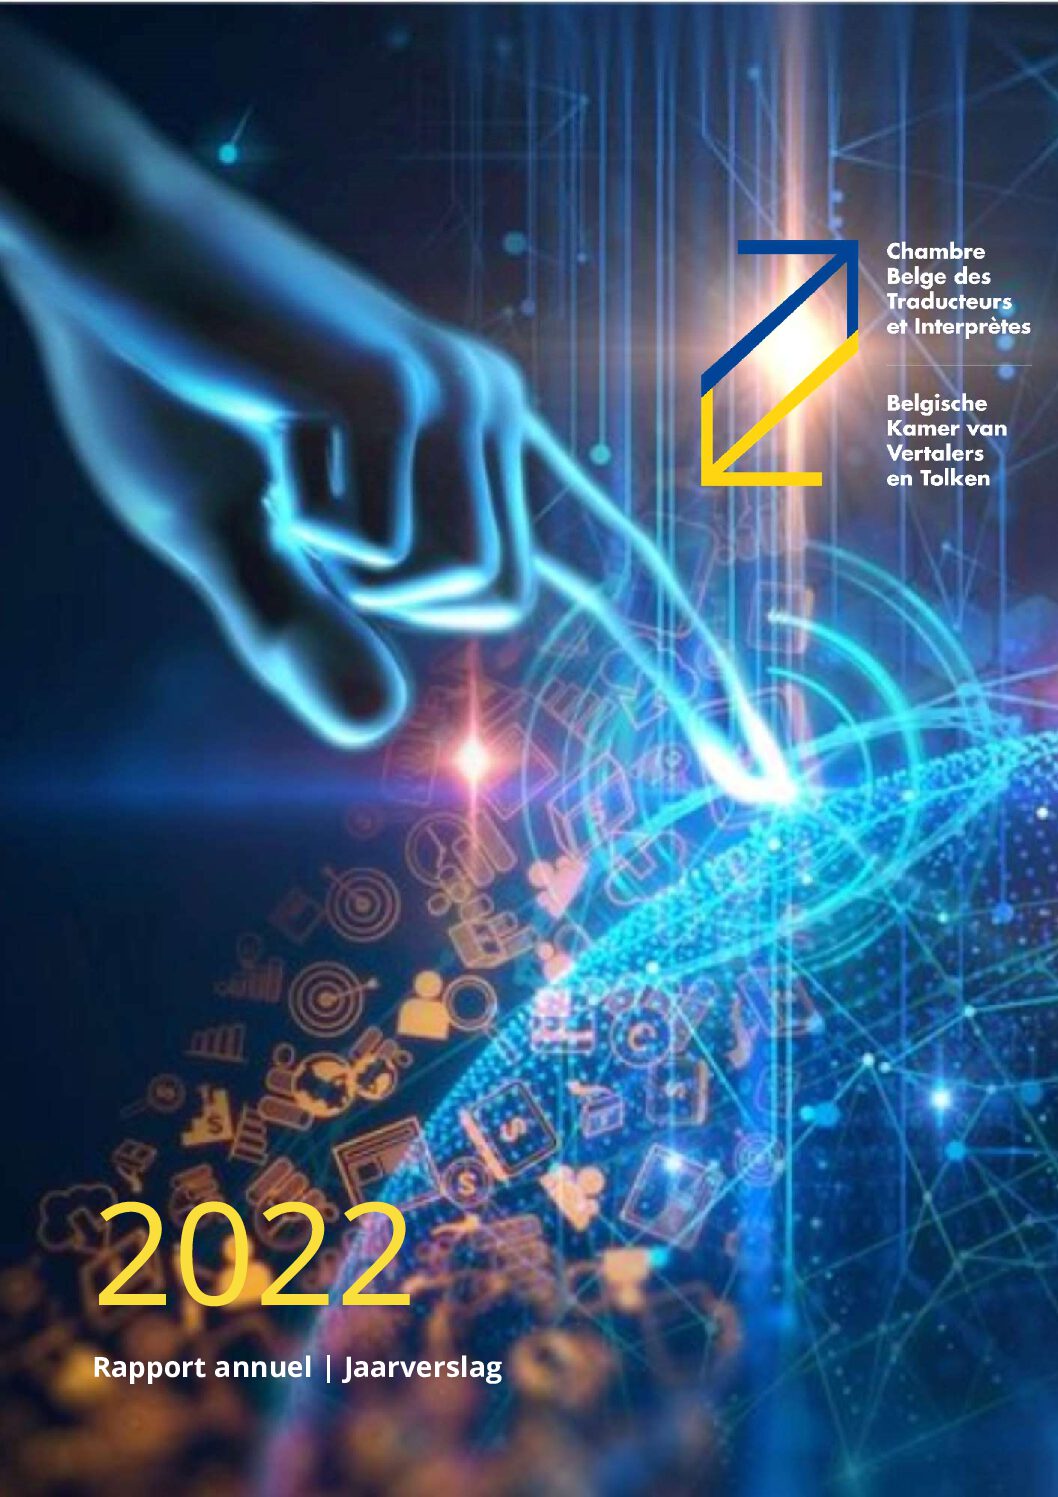 Image de présentation pour le document : Rapport annuel 2022 de la CBTI